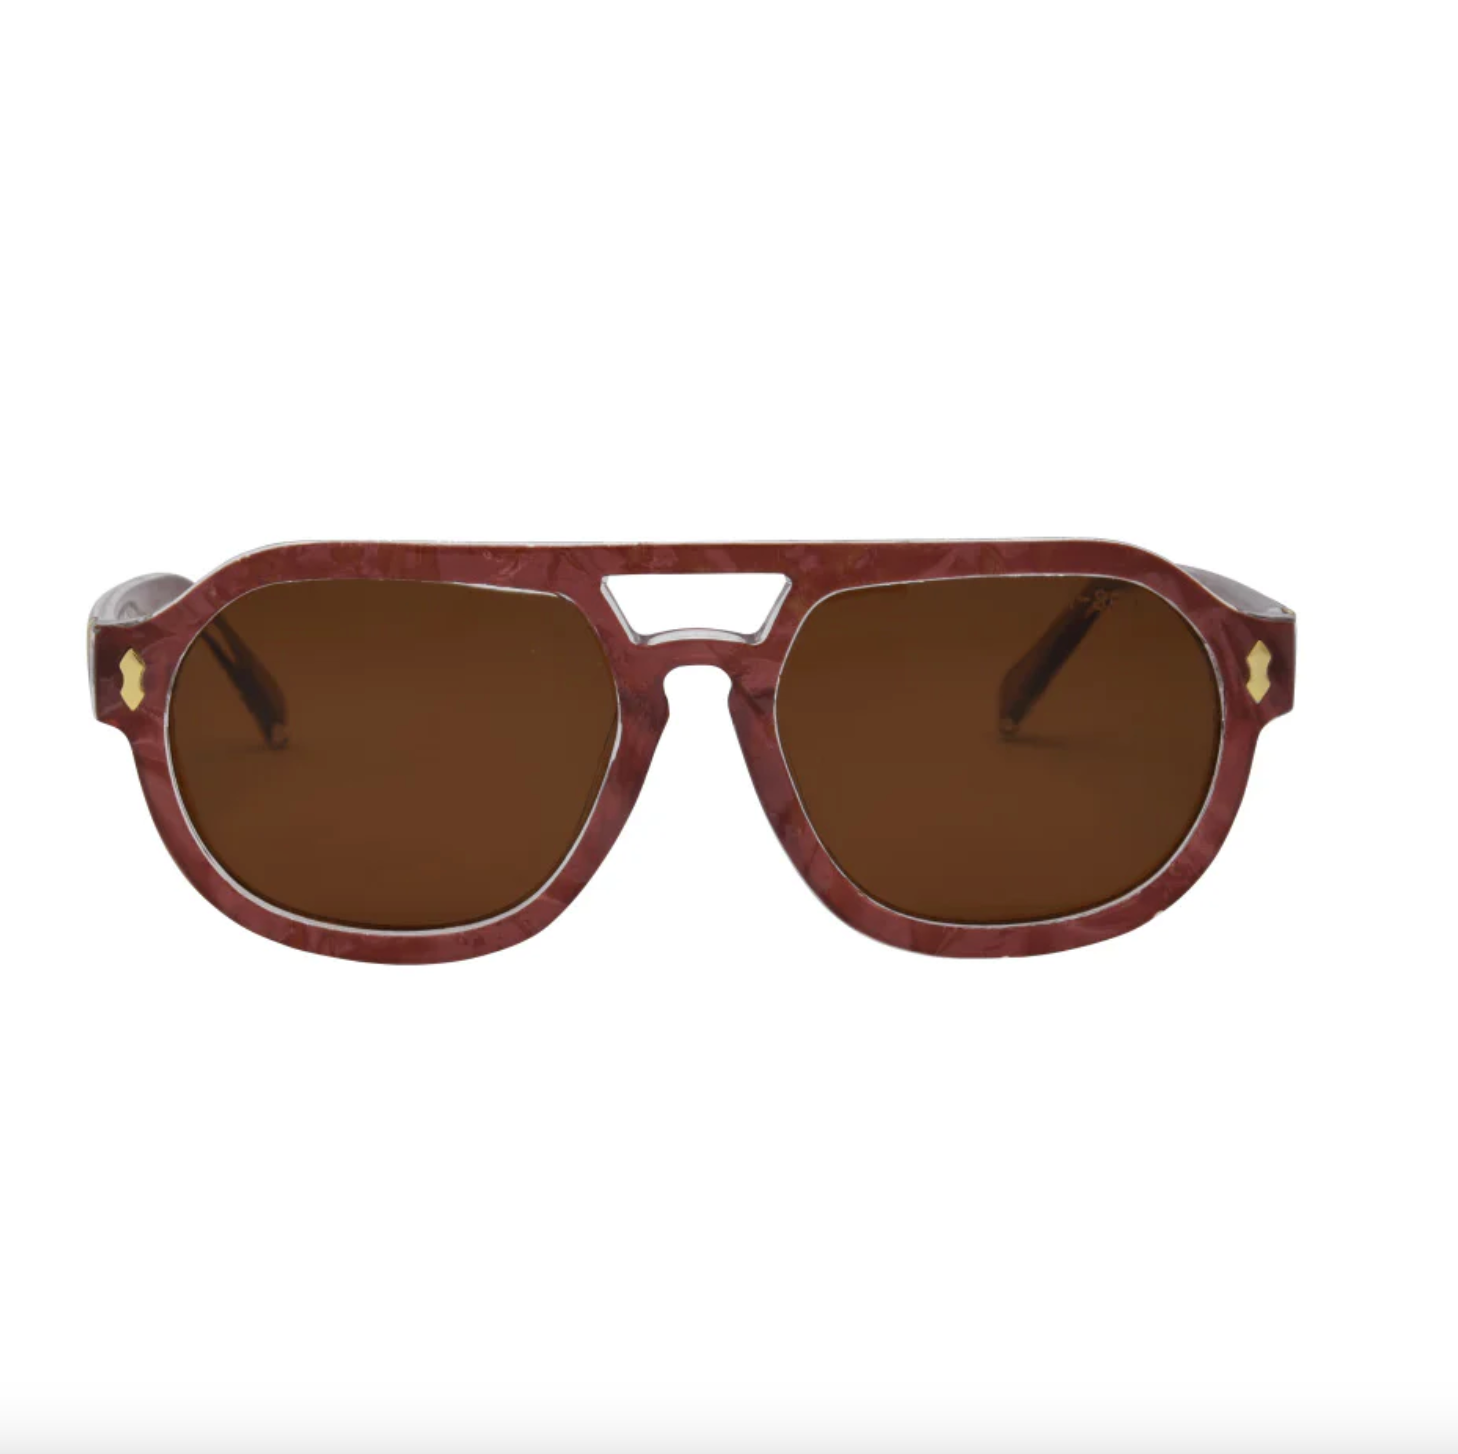 I-Sea Ziggy Sunglasses Sunglasses in Brown Pearl at Wrapsody